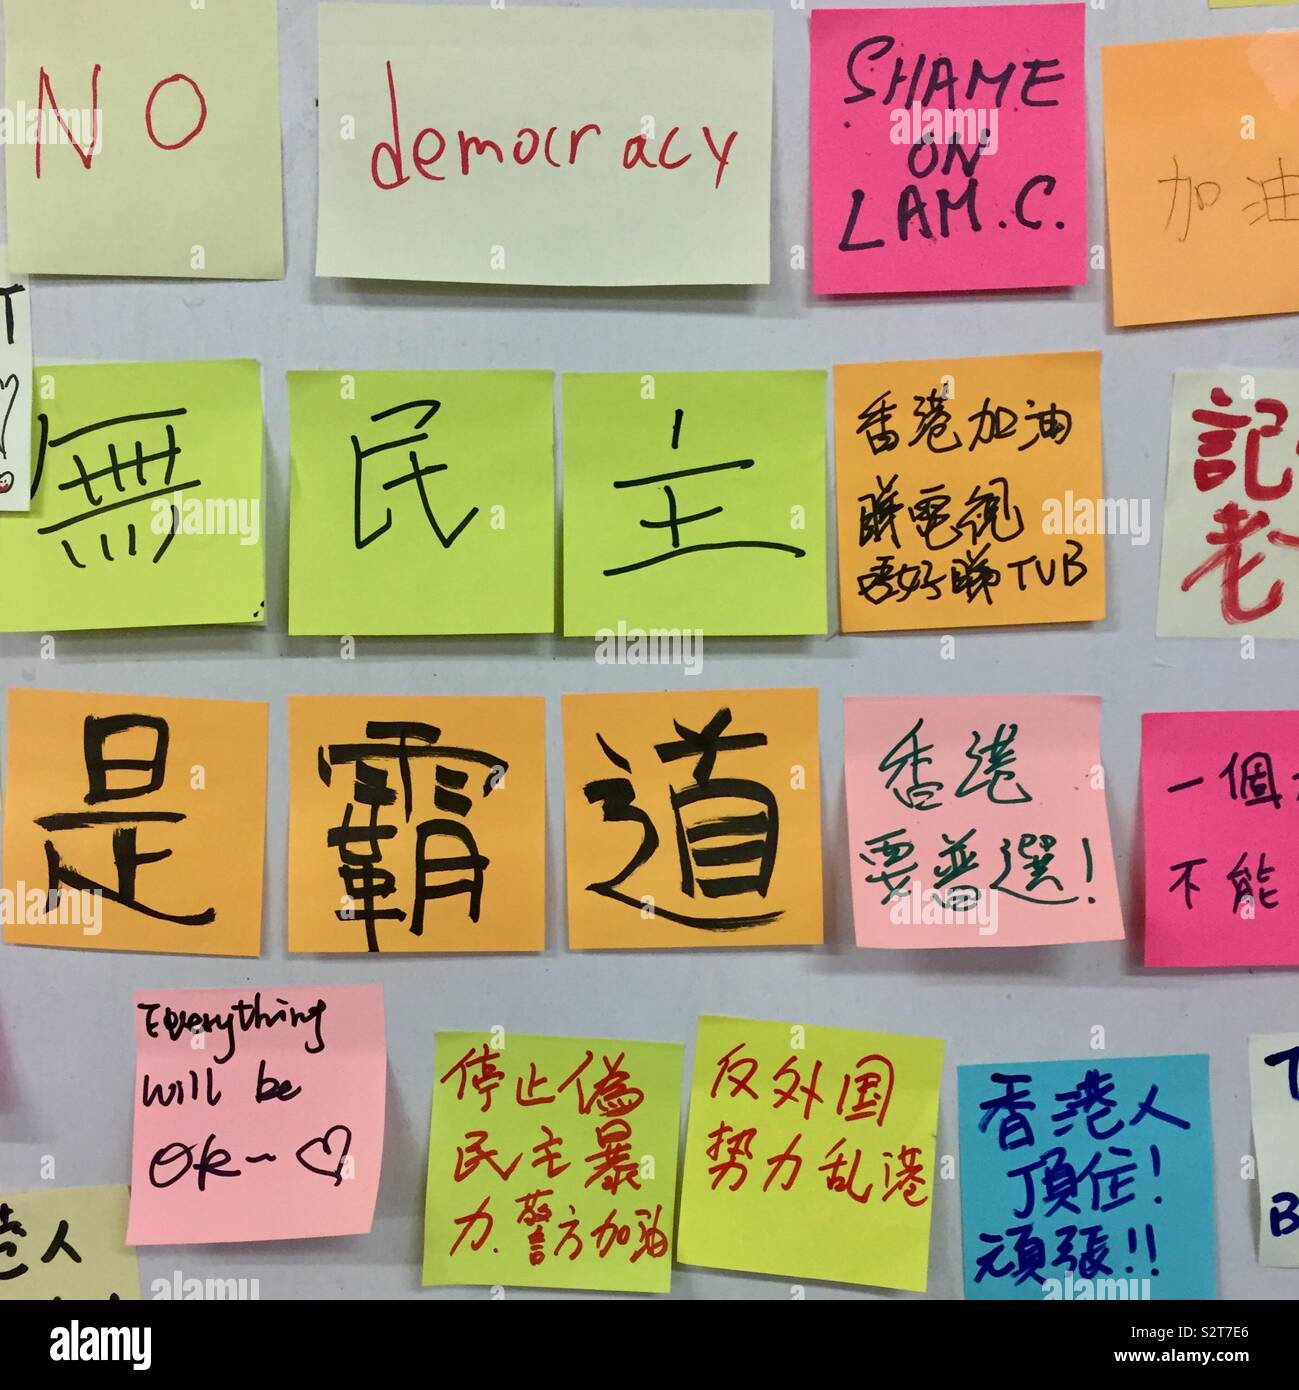 Lennon Wall, Hong Kong Stock Photo